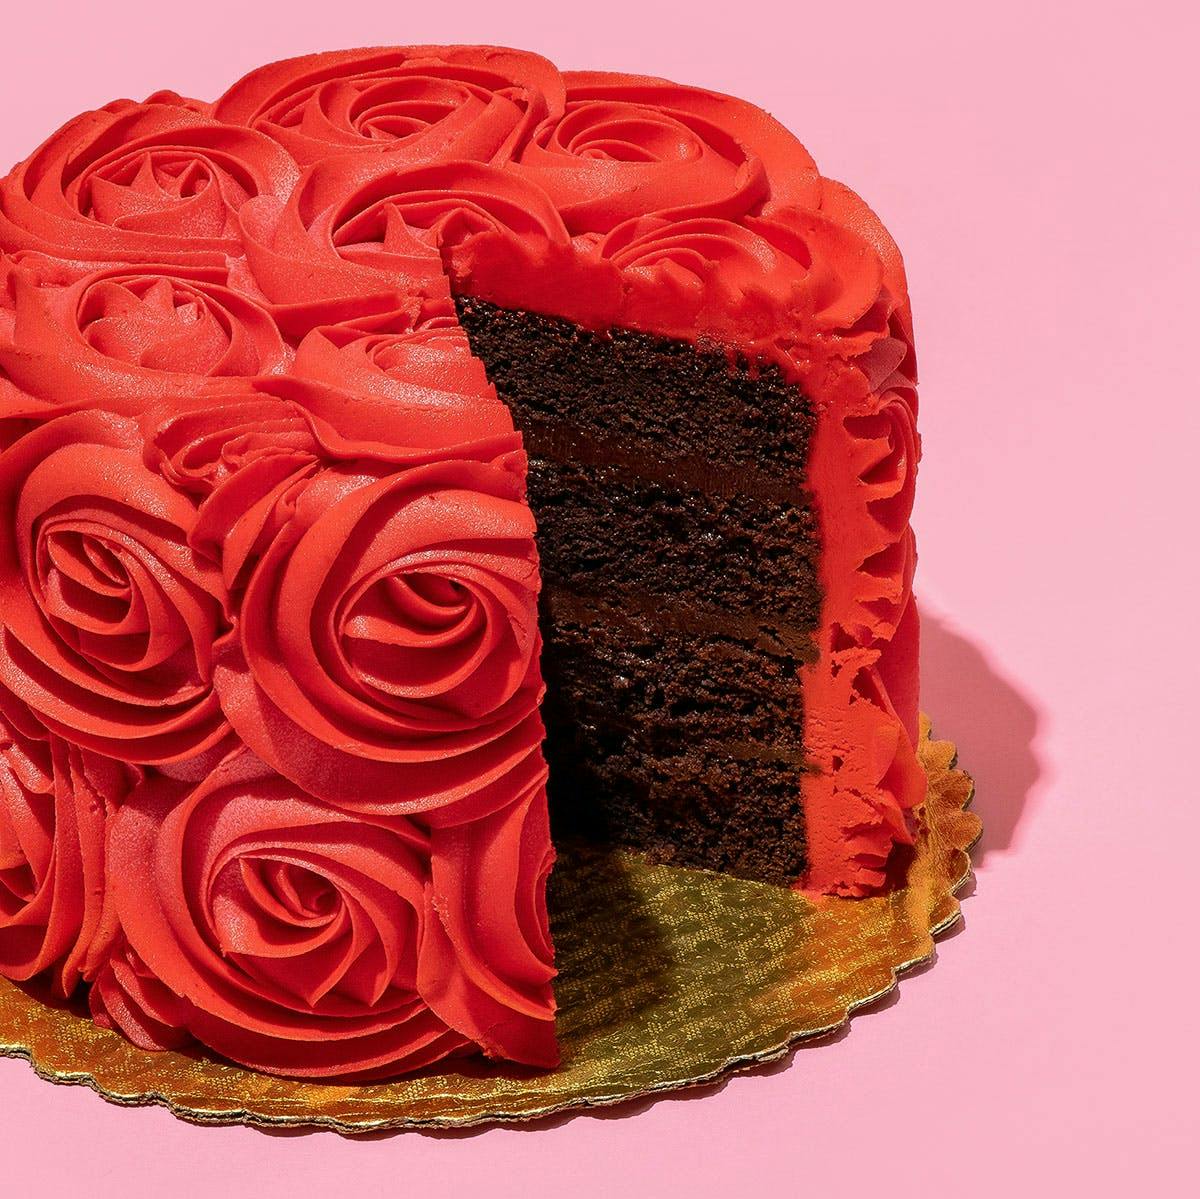 Birthday Cake Red Images - Free Download on Freepik